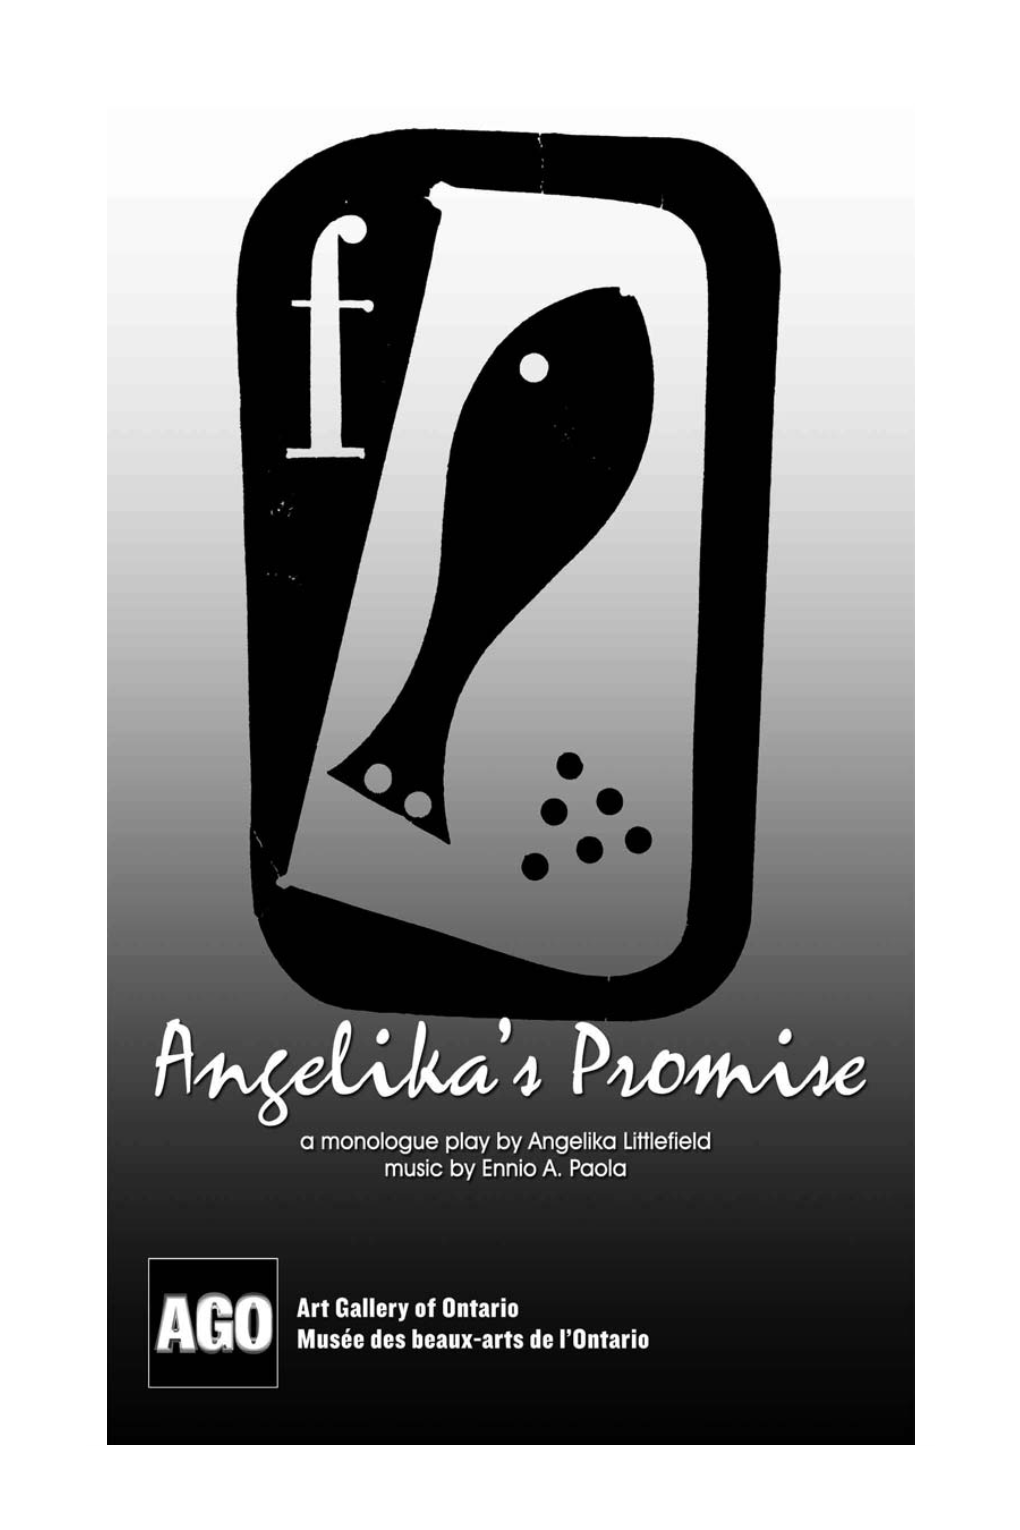 Angelika's Promise © 2009 by Angelika Littlefield